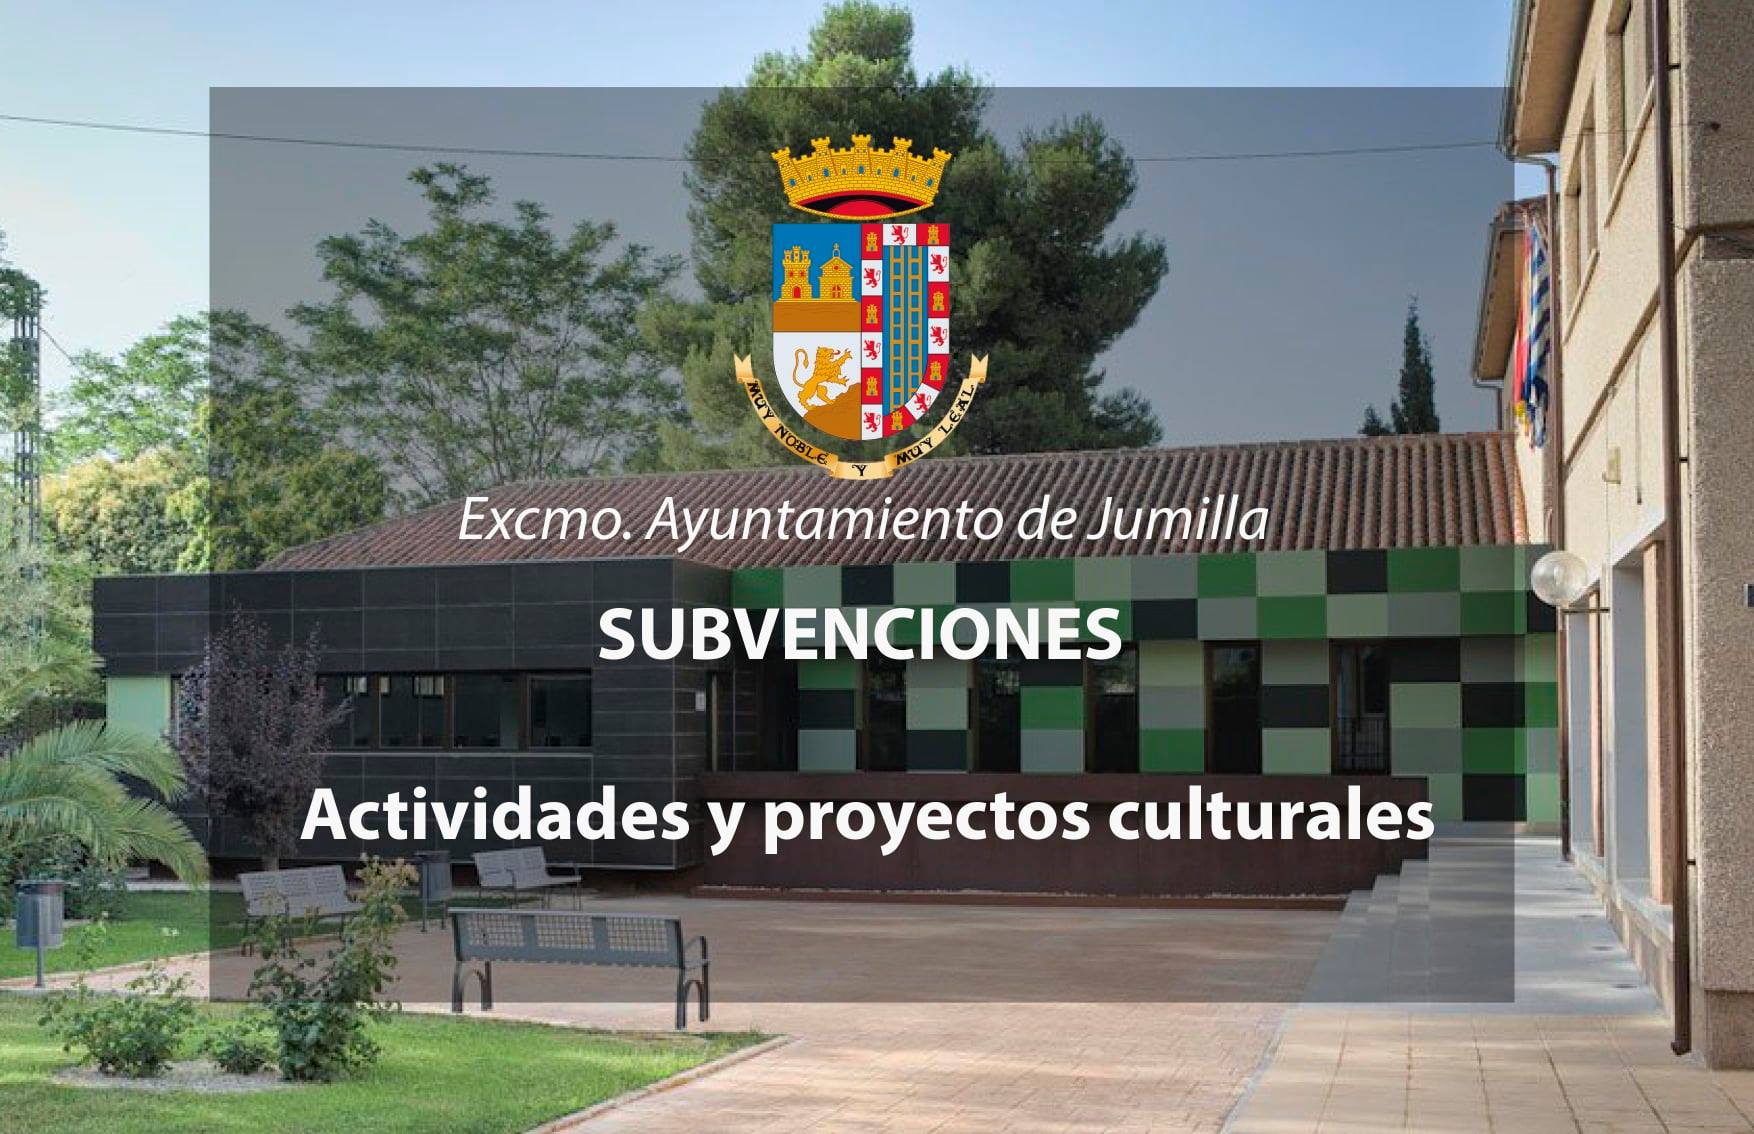 Visto bueno para la convocatoria de subvenciones a proyectos culturales por 40.000 euros